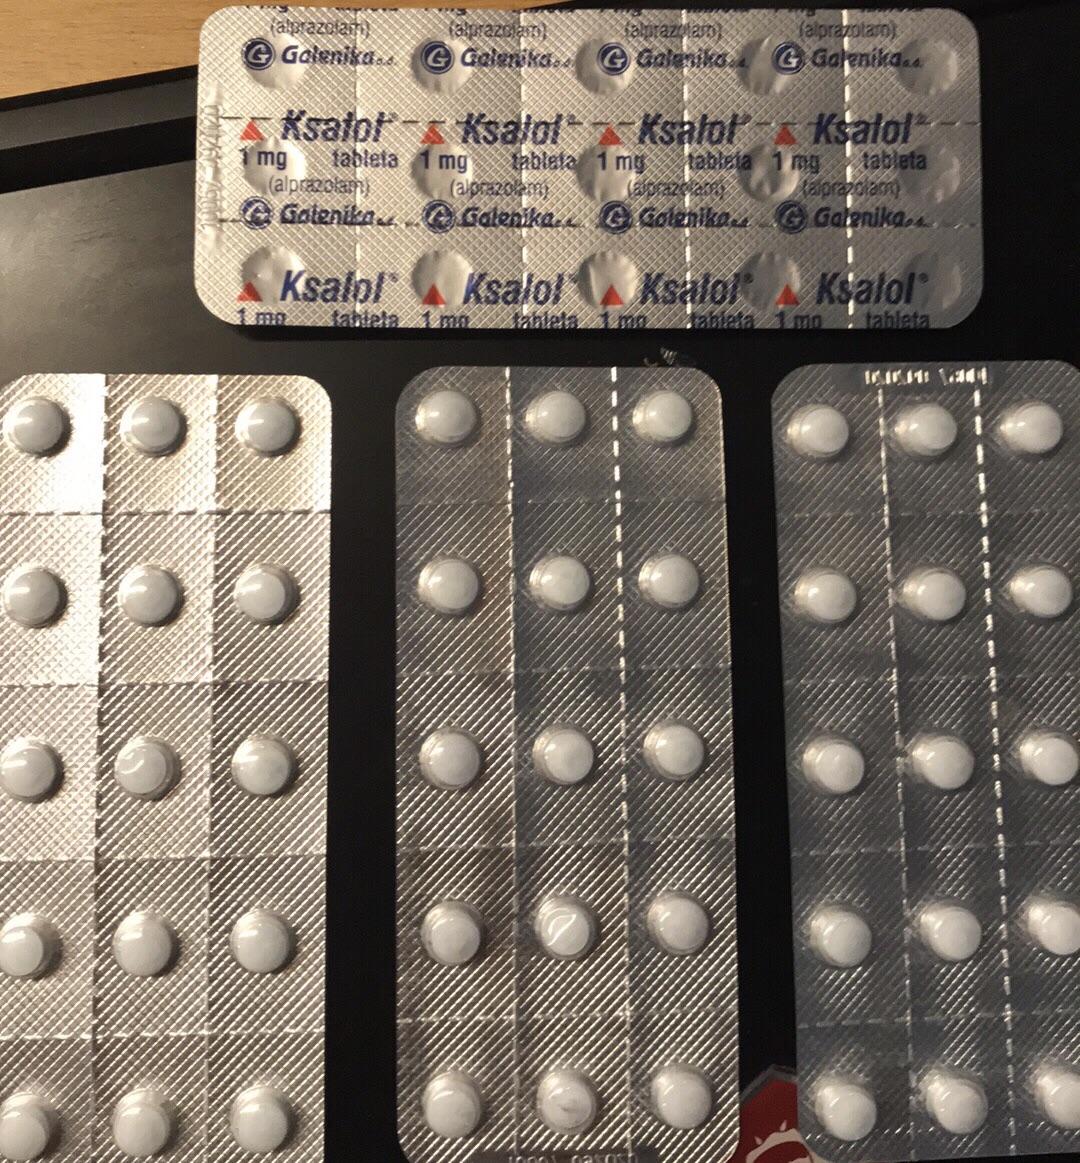 Galenika Ksalol 1mg alprazolam UK Pharma tablets